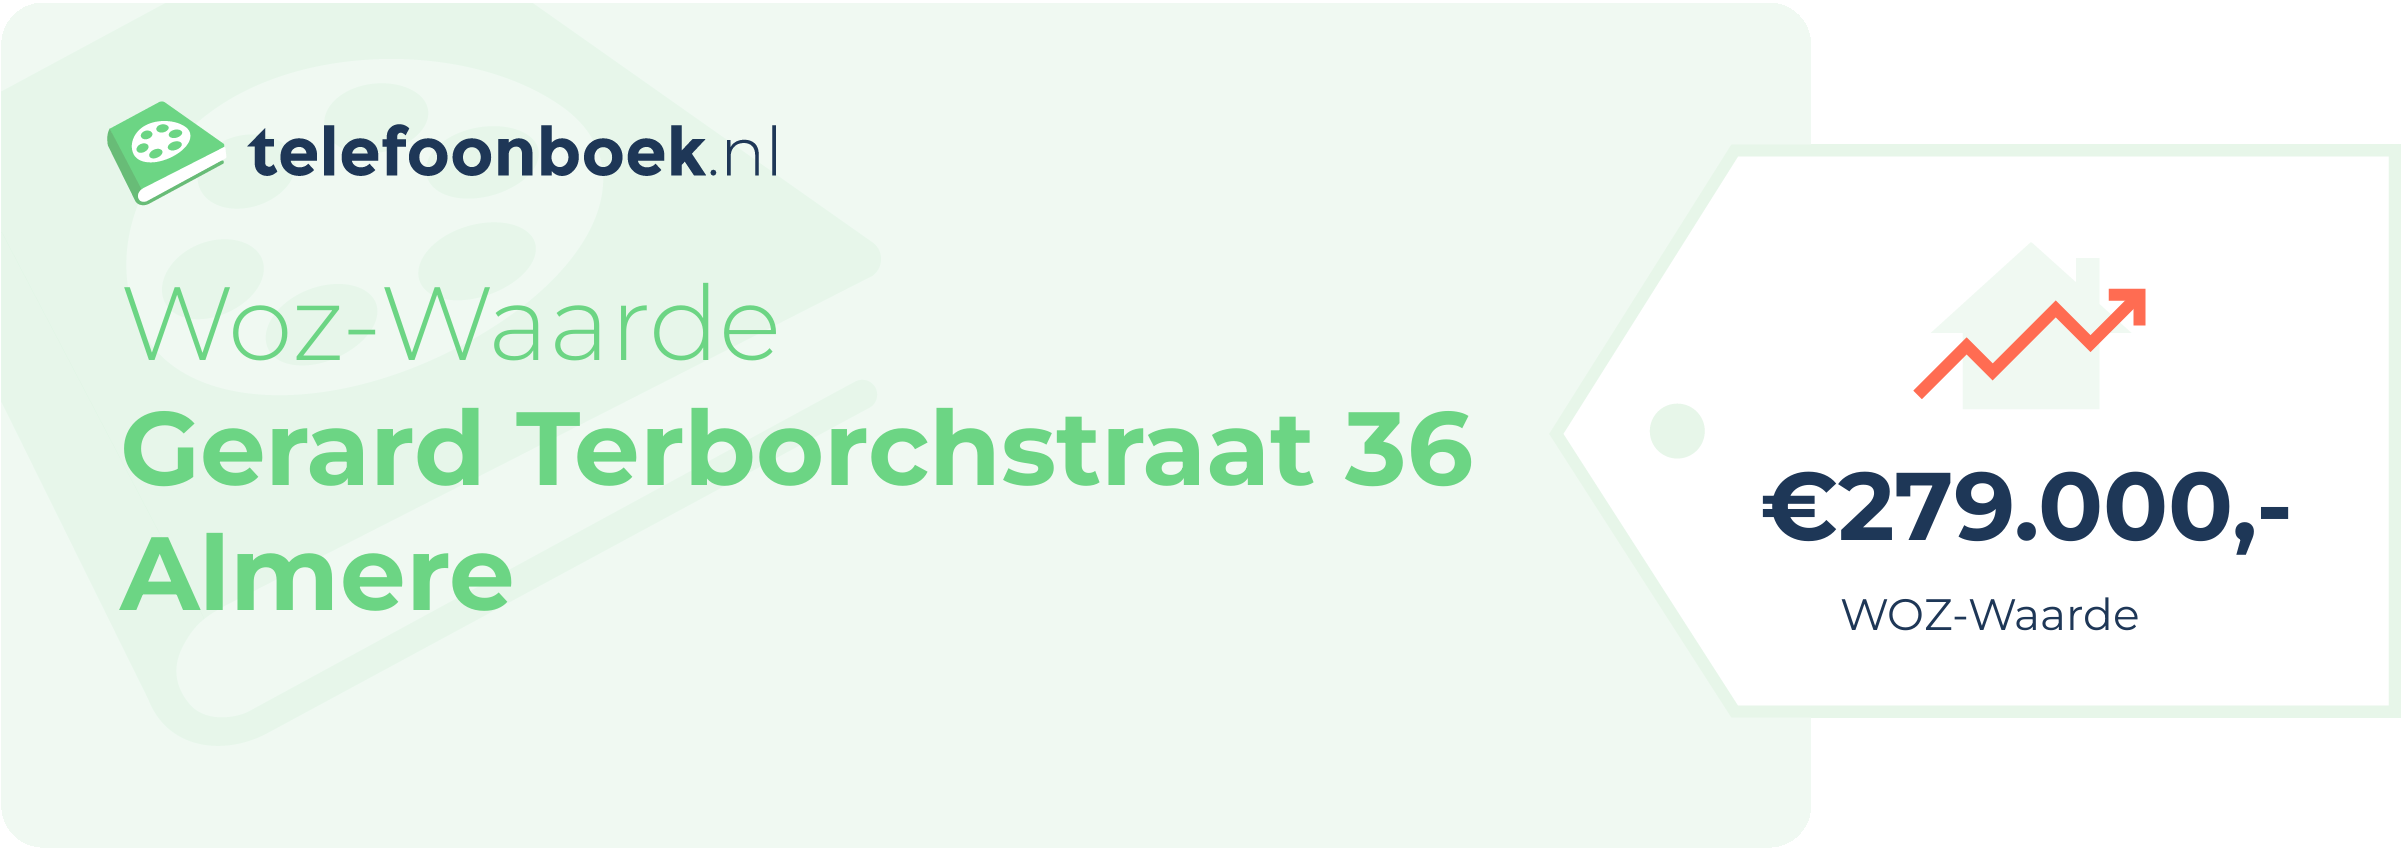 WOZ-waarde Gerard Terborchstraat 36 Almere